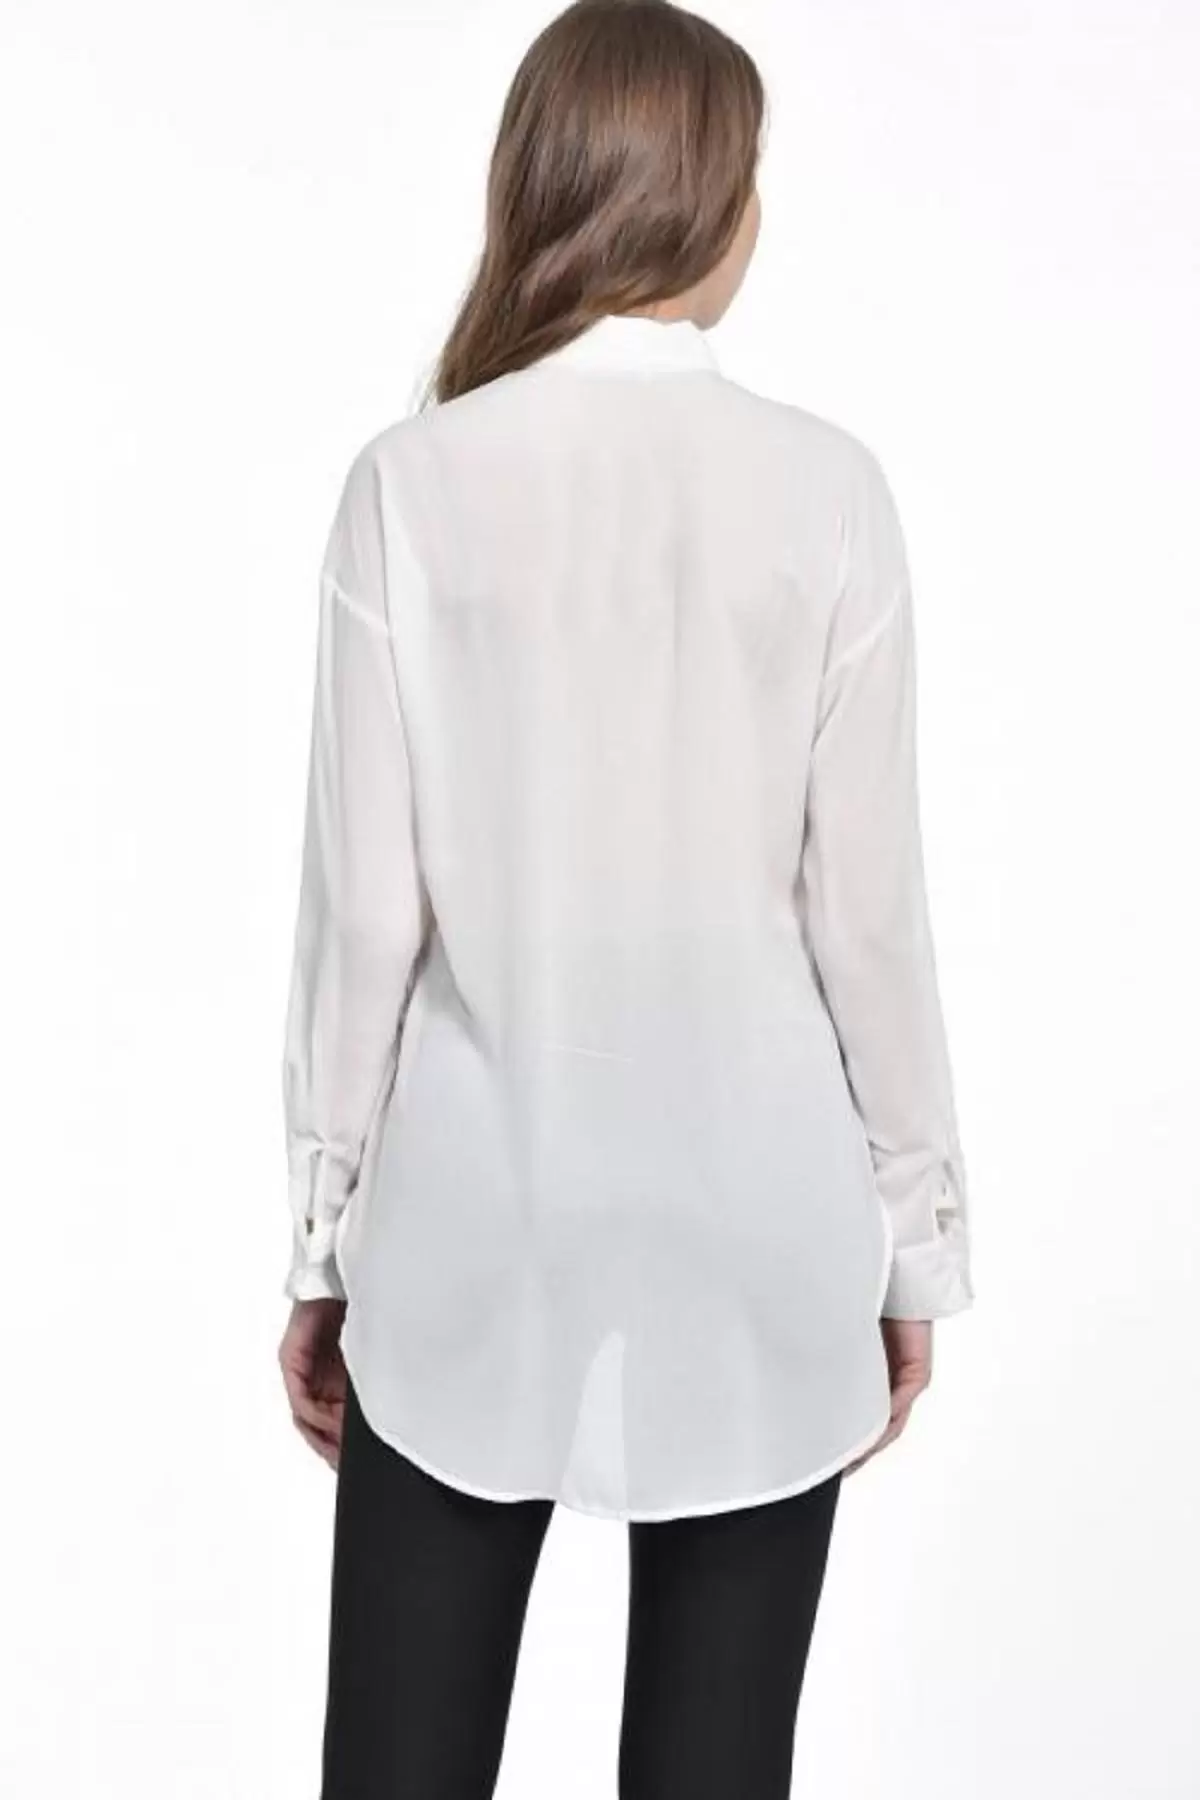 Baskı ve Yırtmaç Detaylı Beyaz Kadın Gömlek